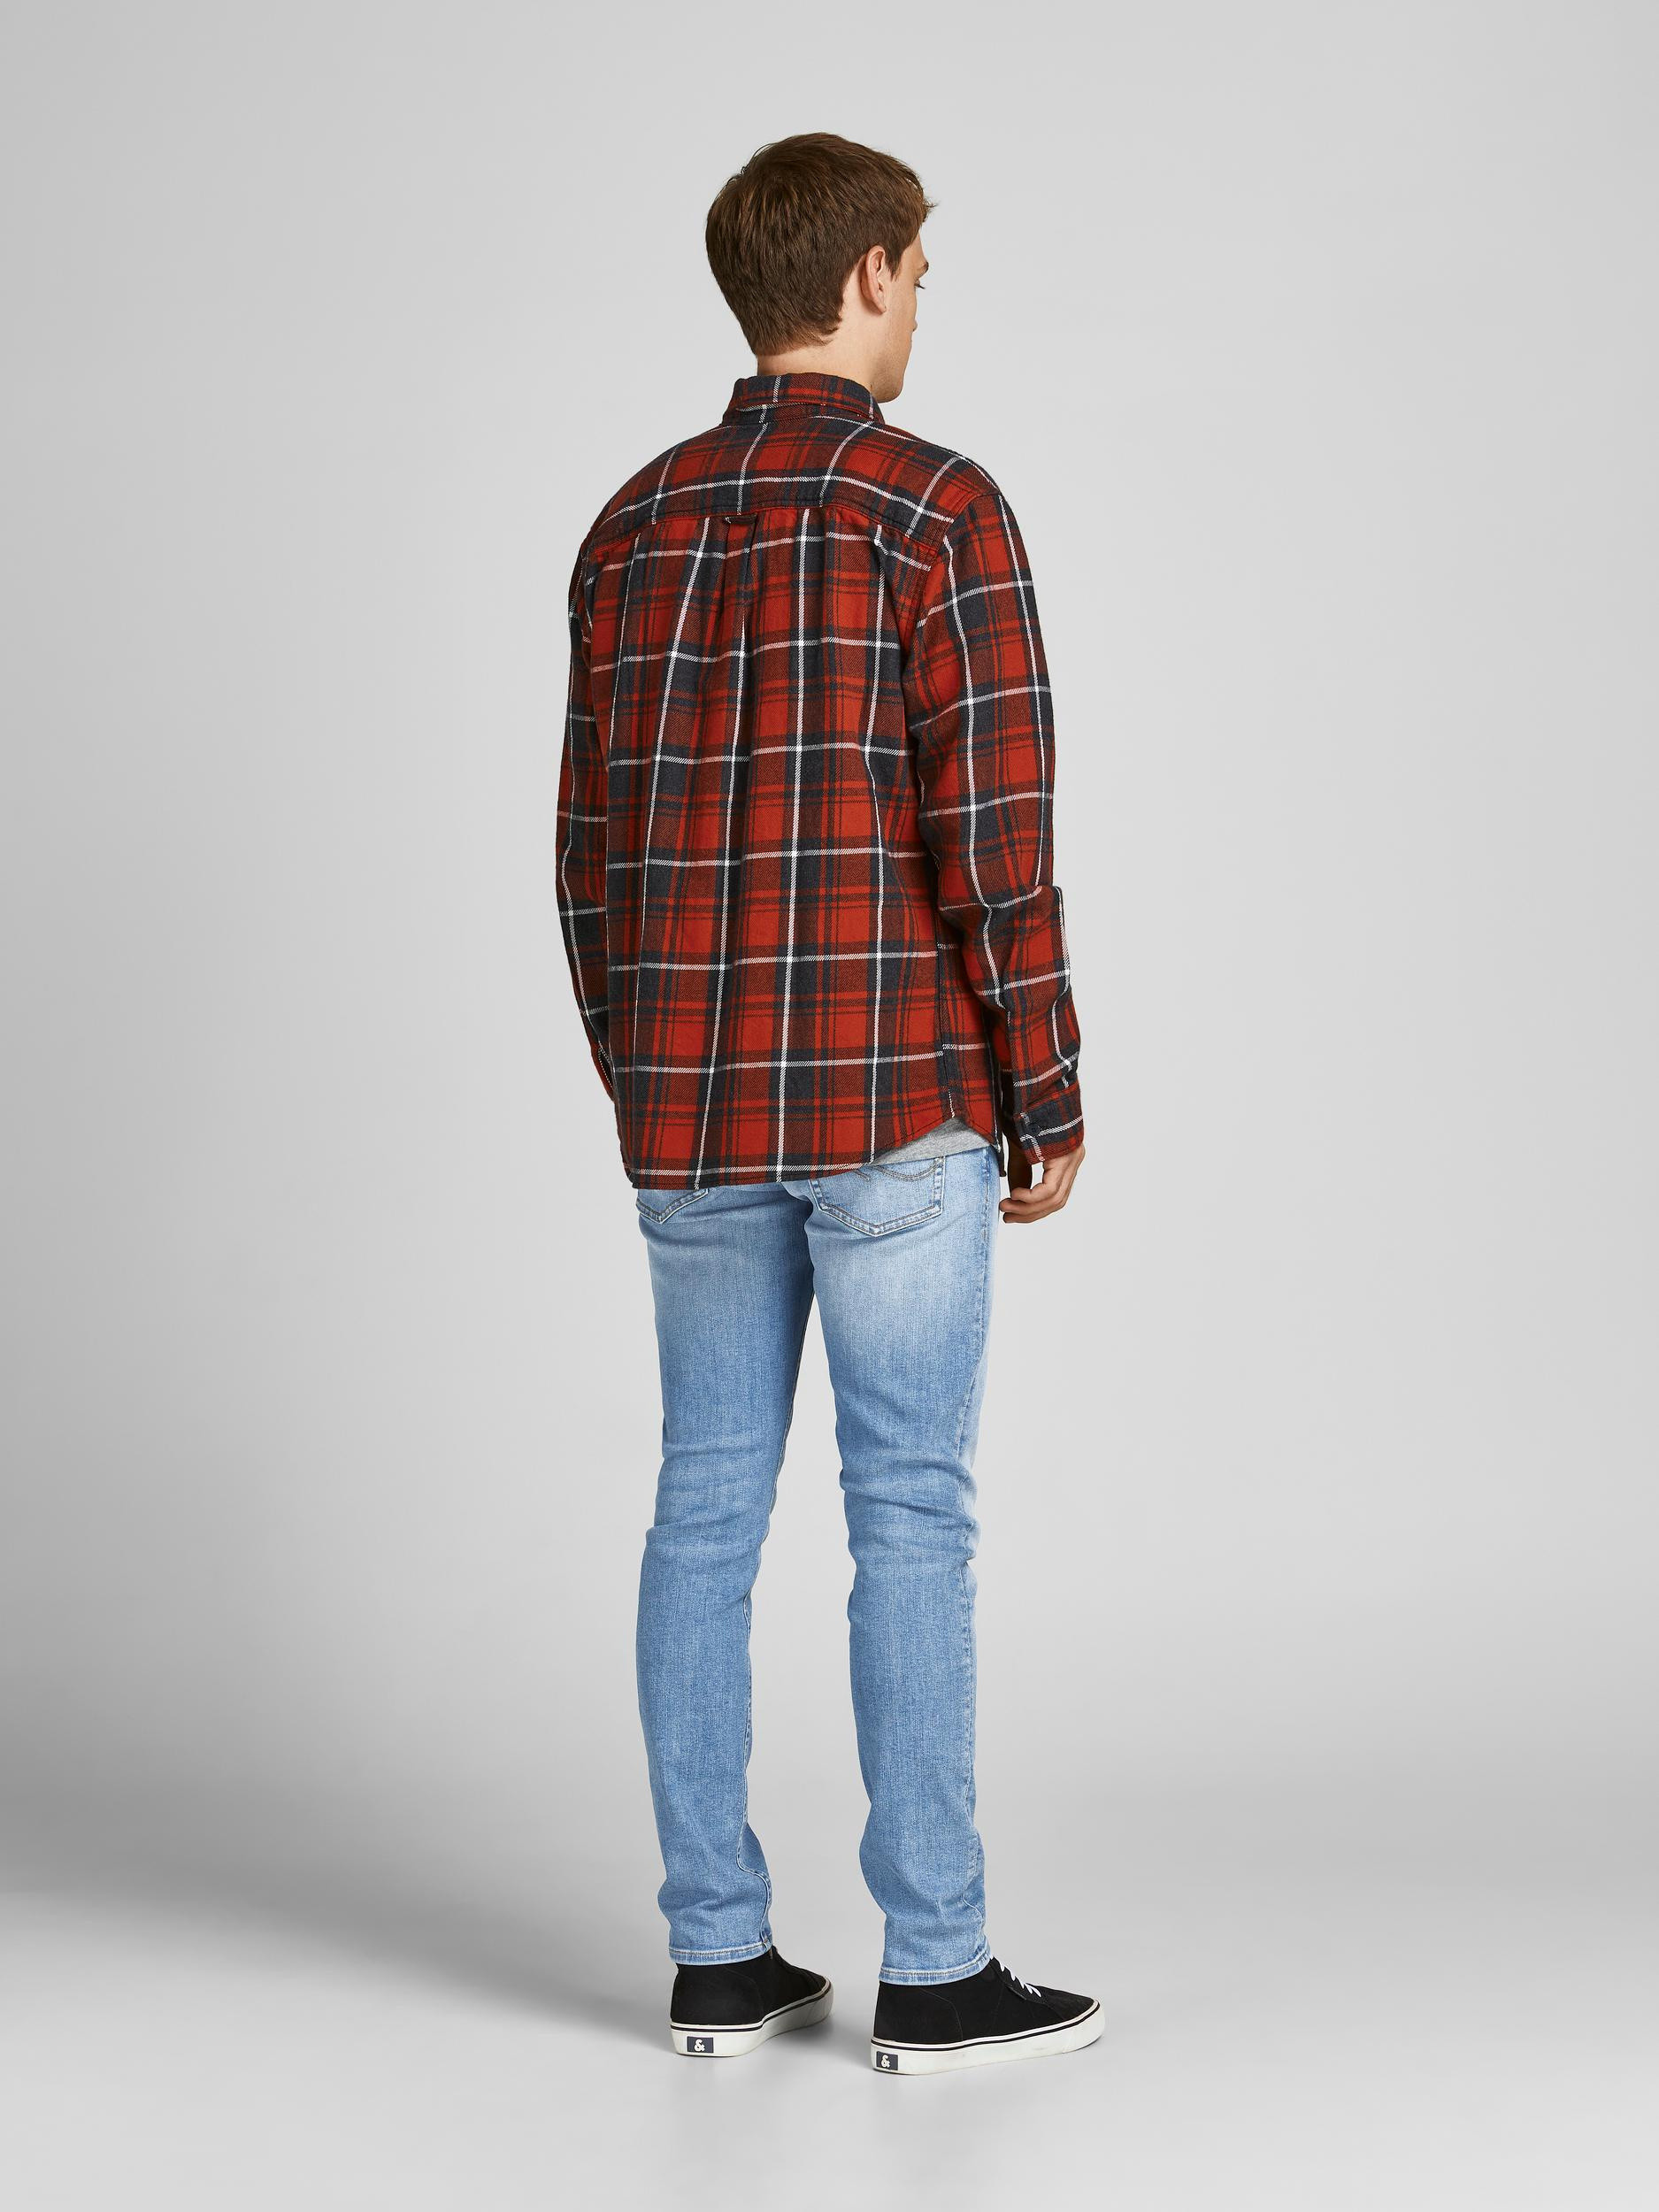 Jack & Jones - Jeans cinque tasche slim fit, Denim, large image number 3